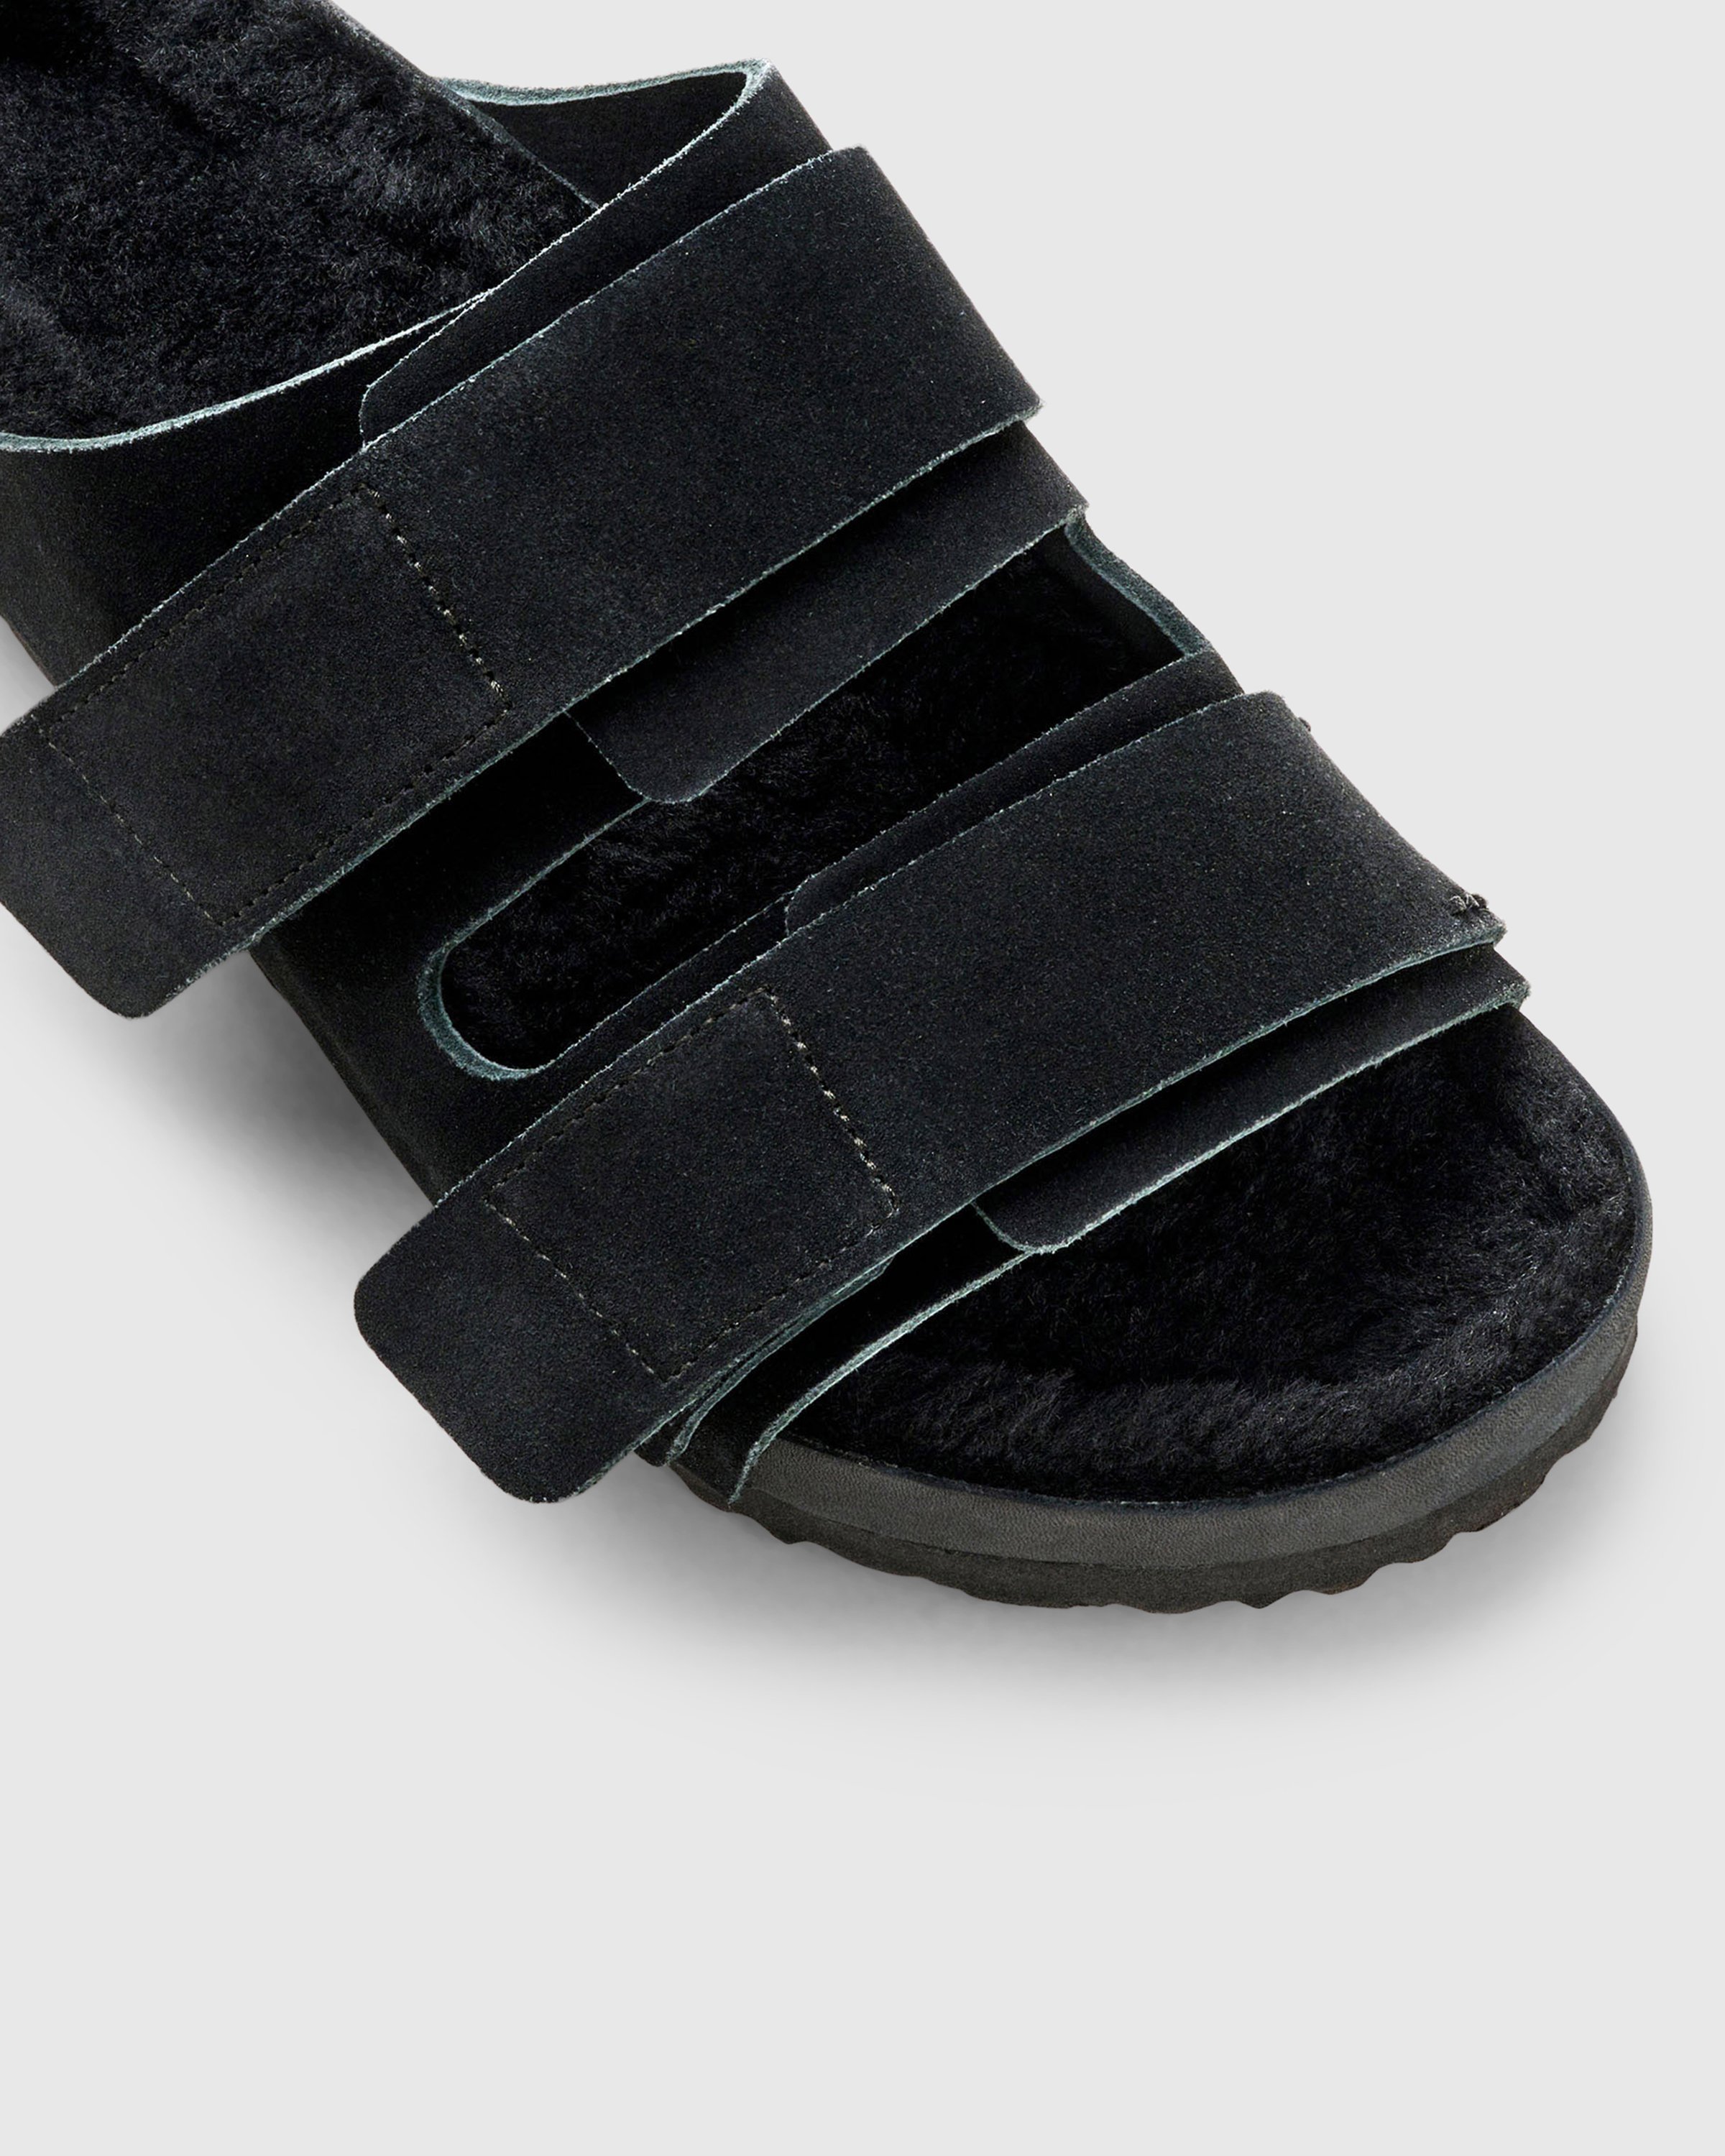 Birkenstock x Tekla - Shearling Uji Slate/Black - Footwear - Black - Image 3